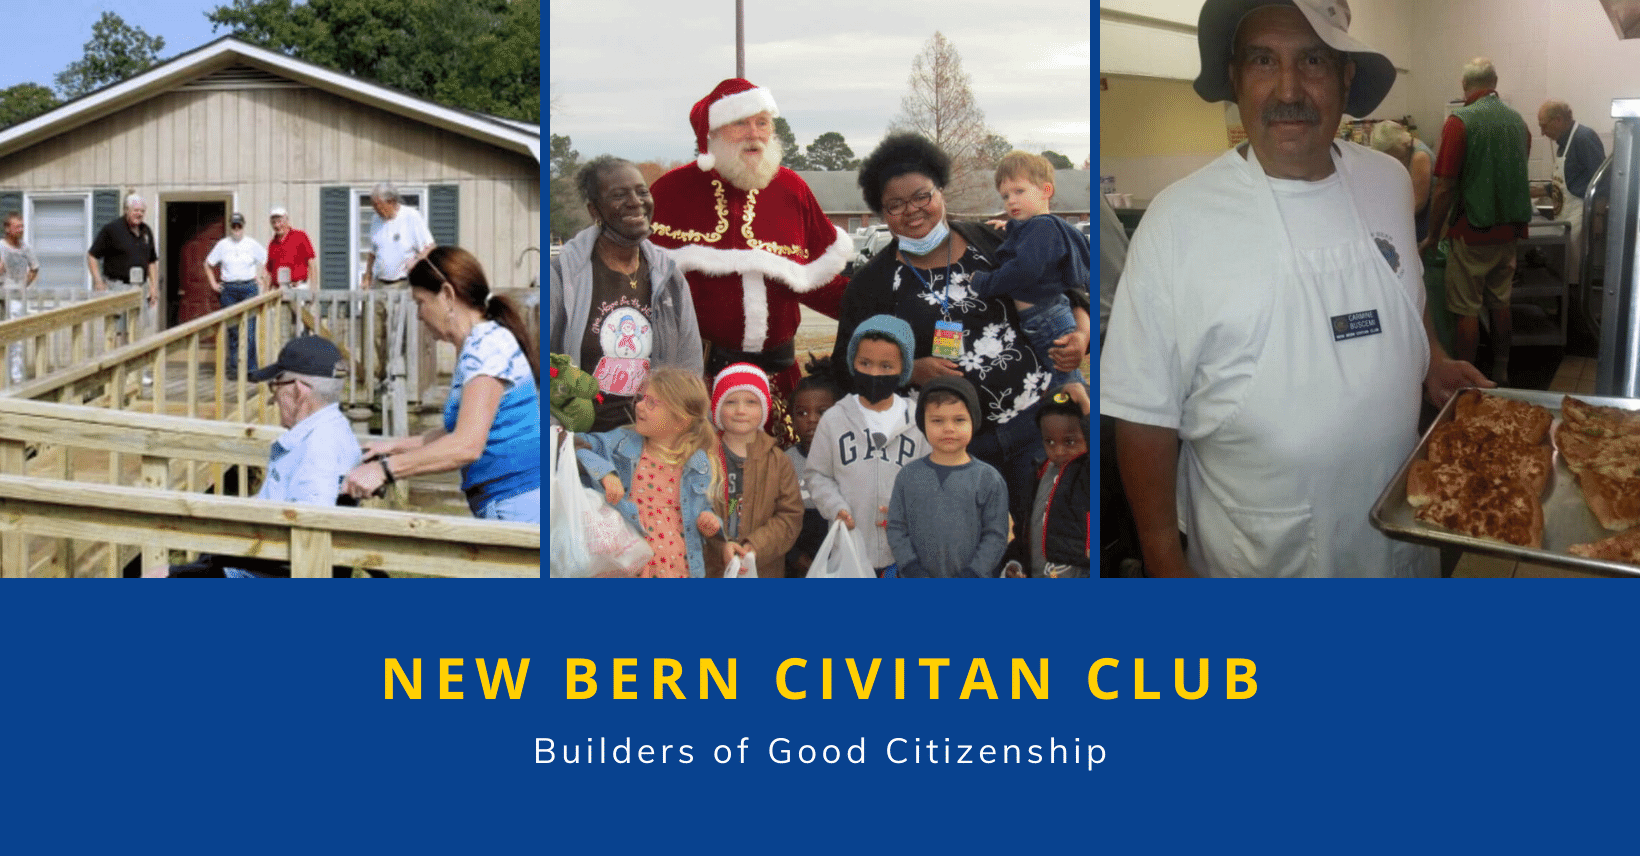 New Bern Civitan Club photos and logo